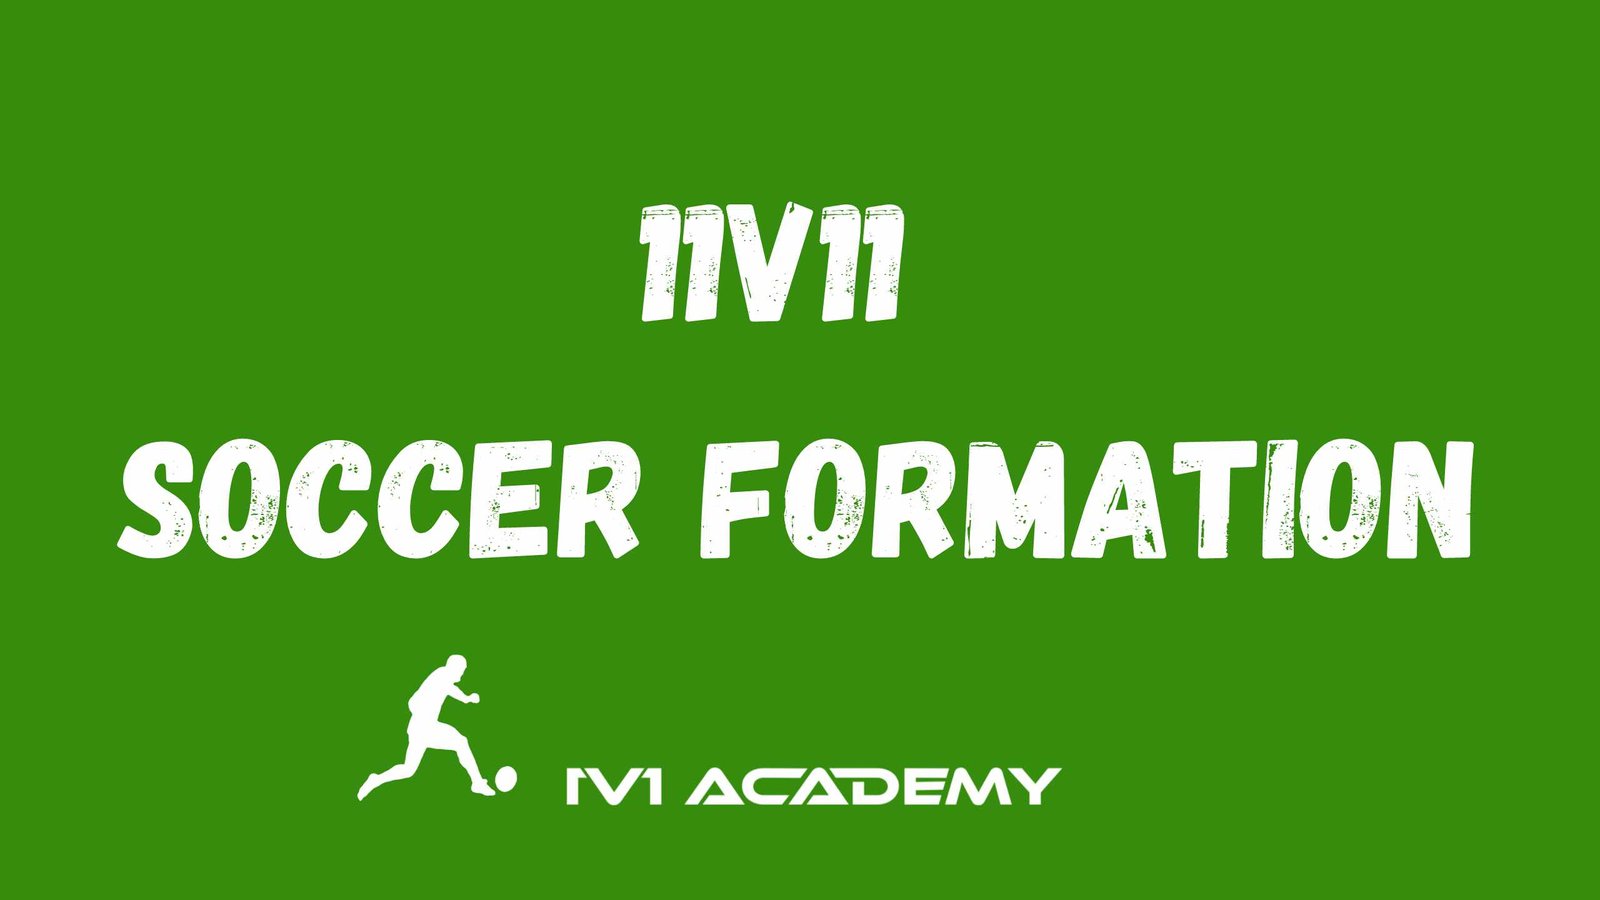 11v11 Soccer Formations